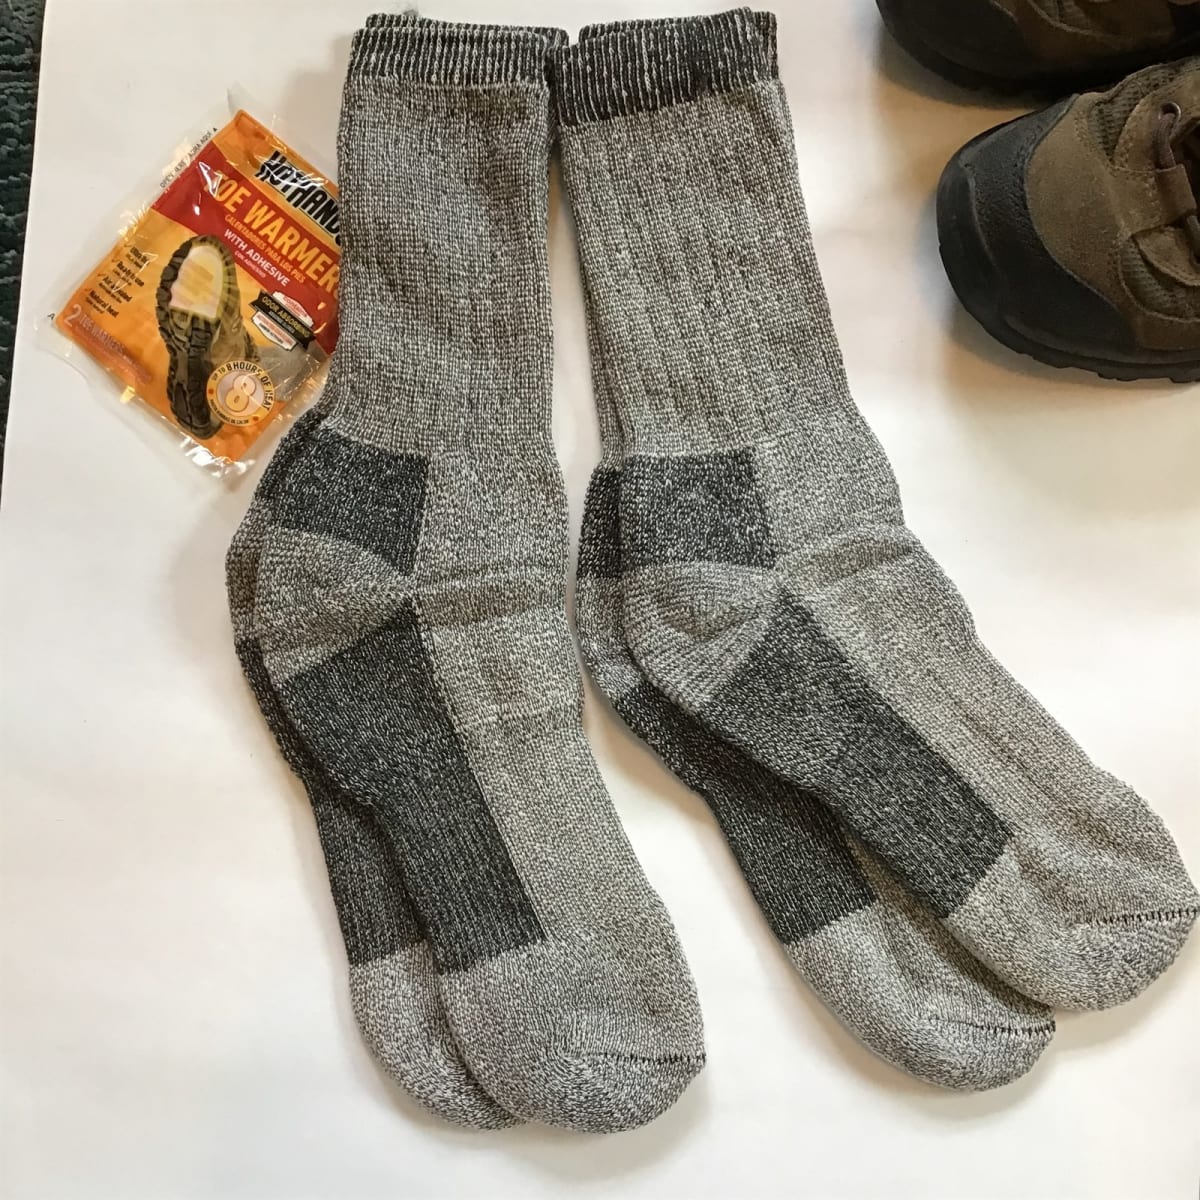 Wool Blend Skiing/Hiking Women Socks - 2-Pack Bundle with 1 pack